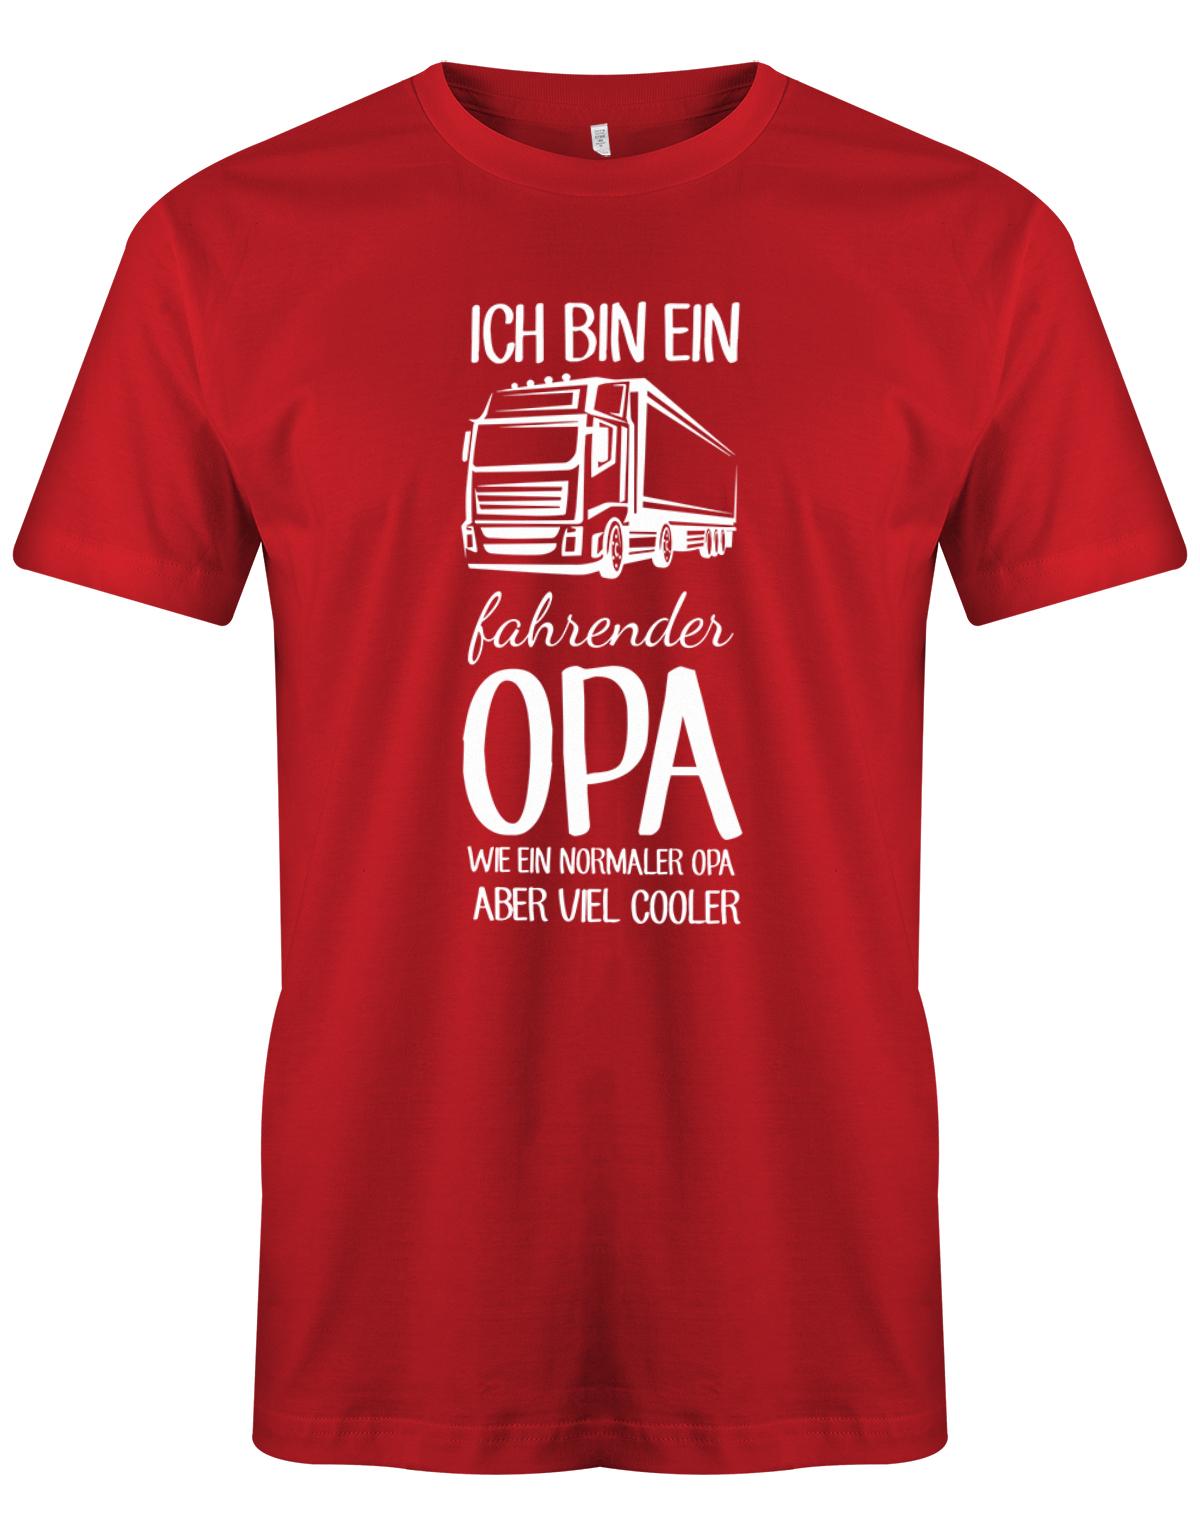 Ich bin ein LKW fahrender Opa wie ein normaler Opa aber viel cooler - Kraftfahrer - Herren T-Shirt Rot